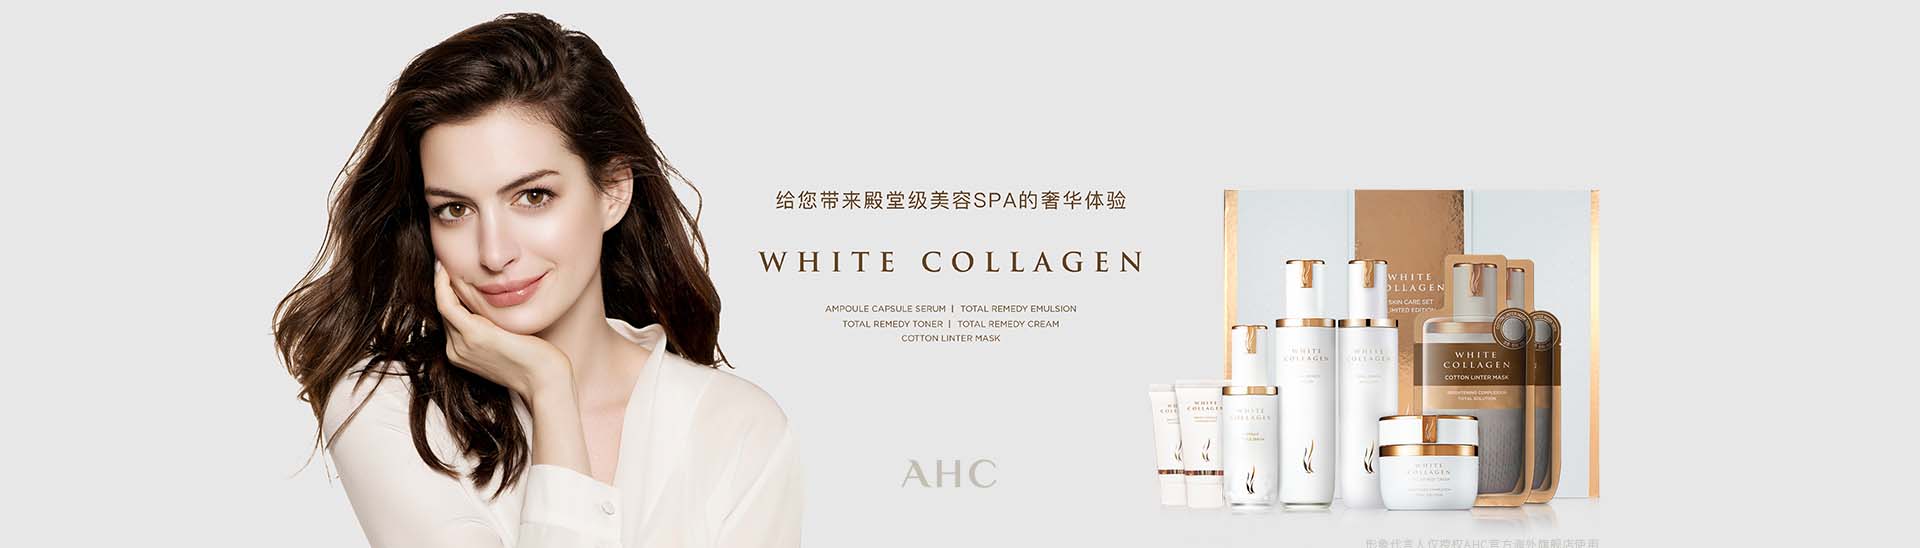 AHC_化妆护肤品成分介绍_爱和纯是哪个国家的品牌_是什么牌子